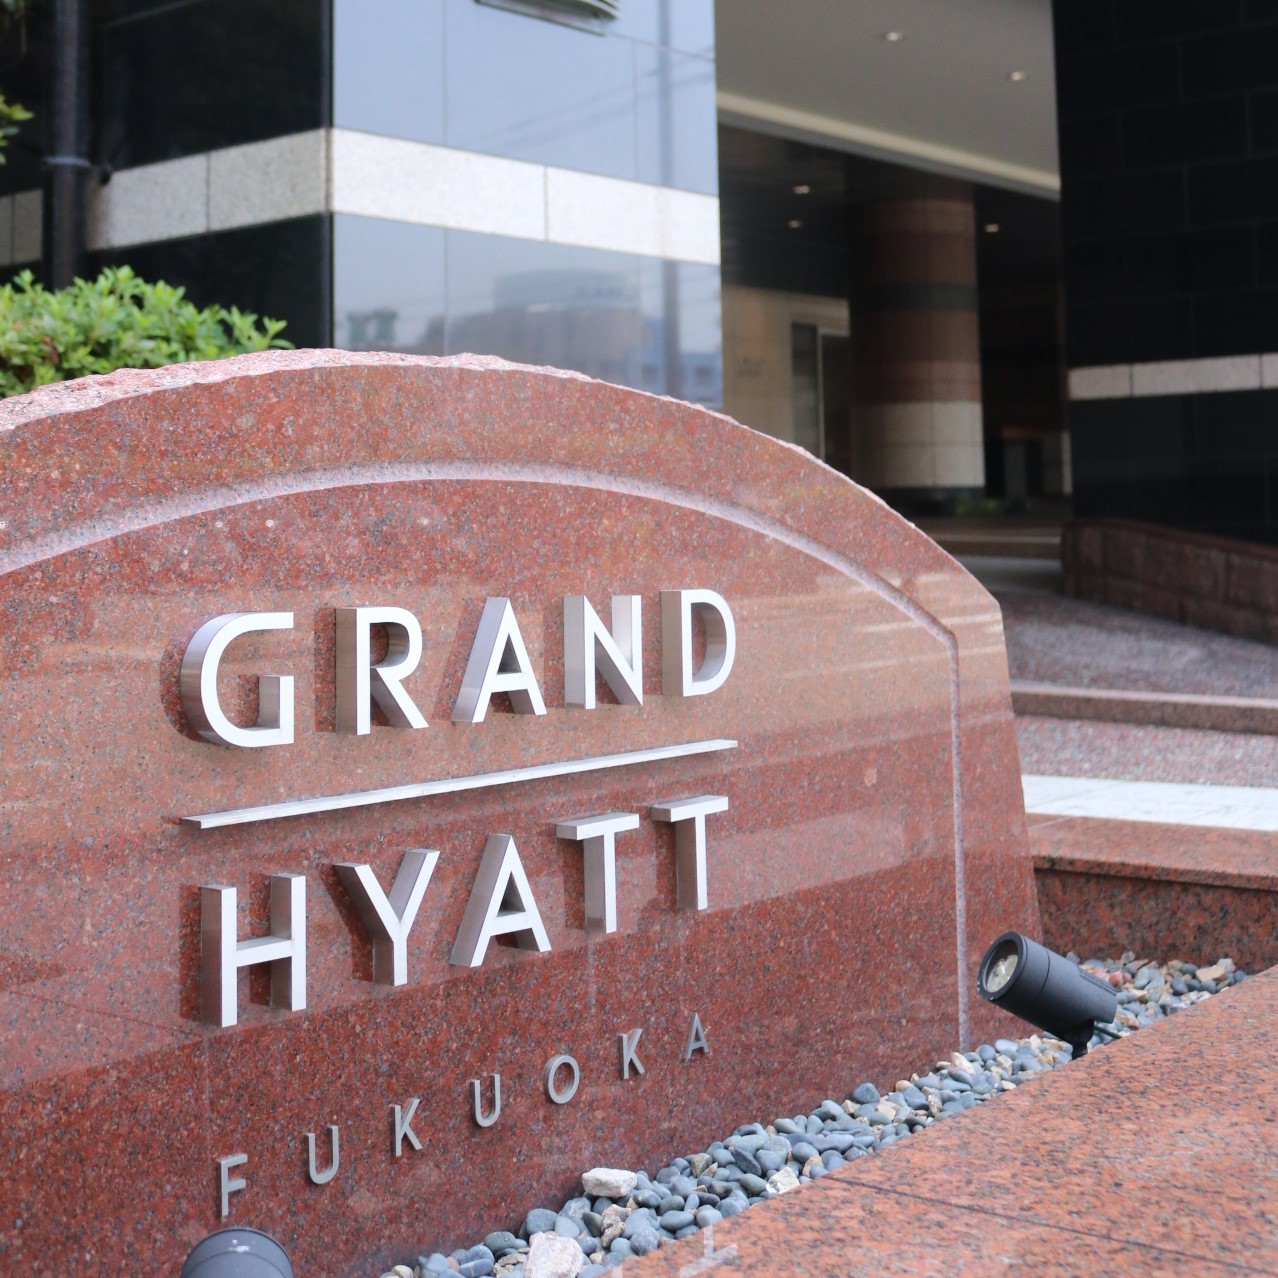 Welcome To GRAND HYATT FUKUOKA!